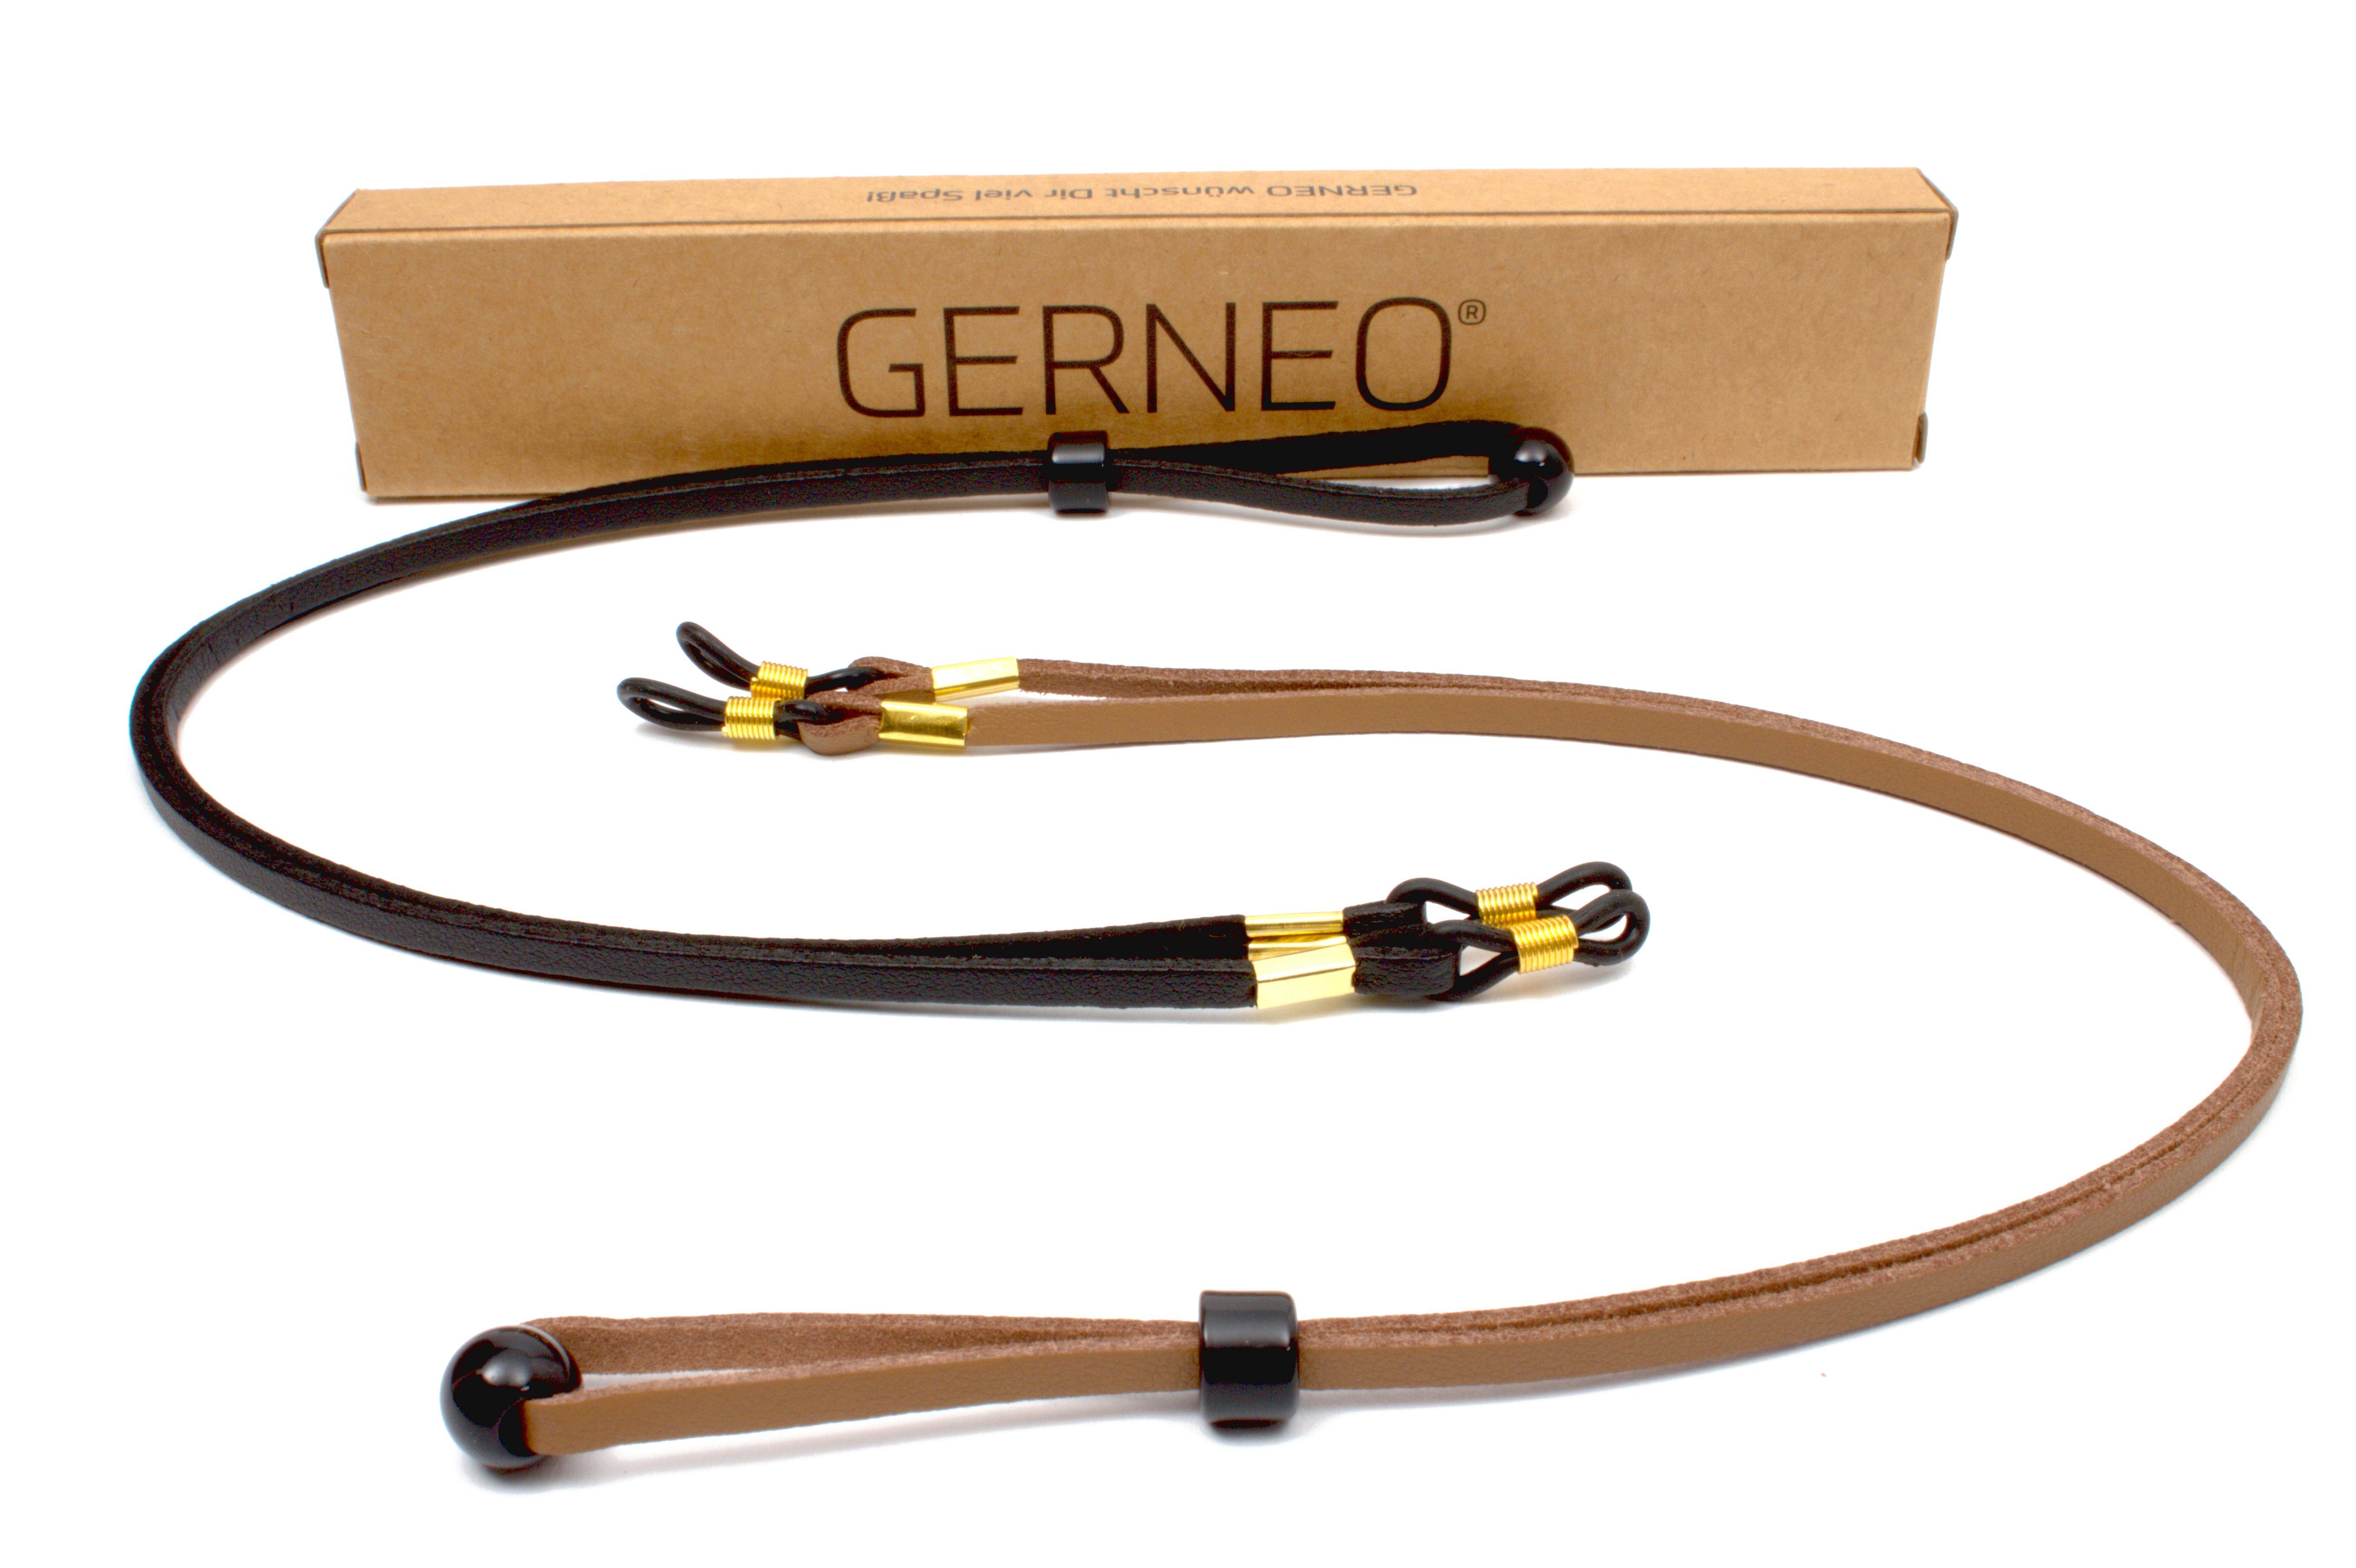 GERNEO Brillenband GERNEO® - Bilbao – hochwertiges Brillenband Leder- & Wildlederoptik, PU Brillenkordel – Band schwarz & hellbraun – Halterungen gold